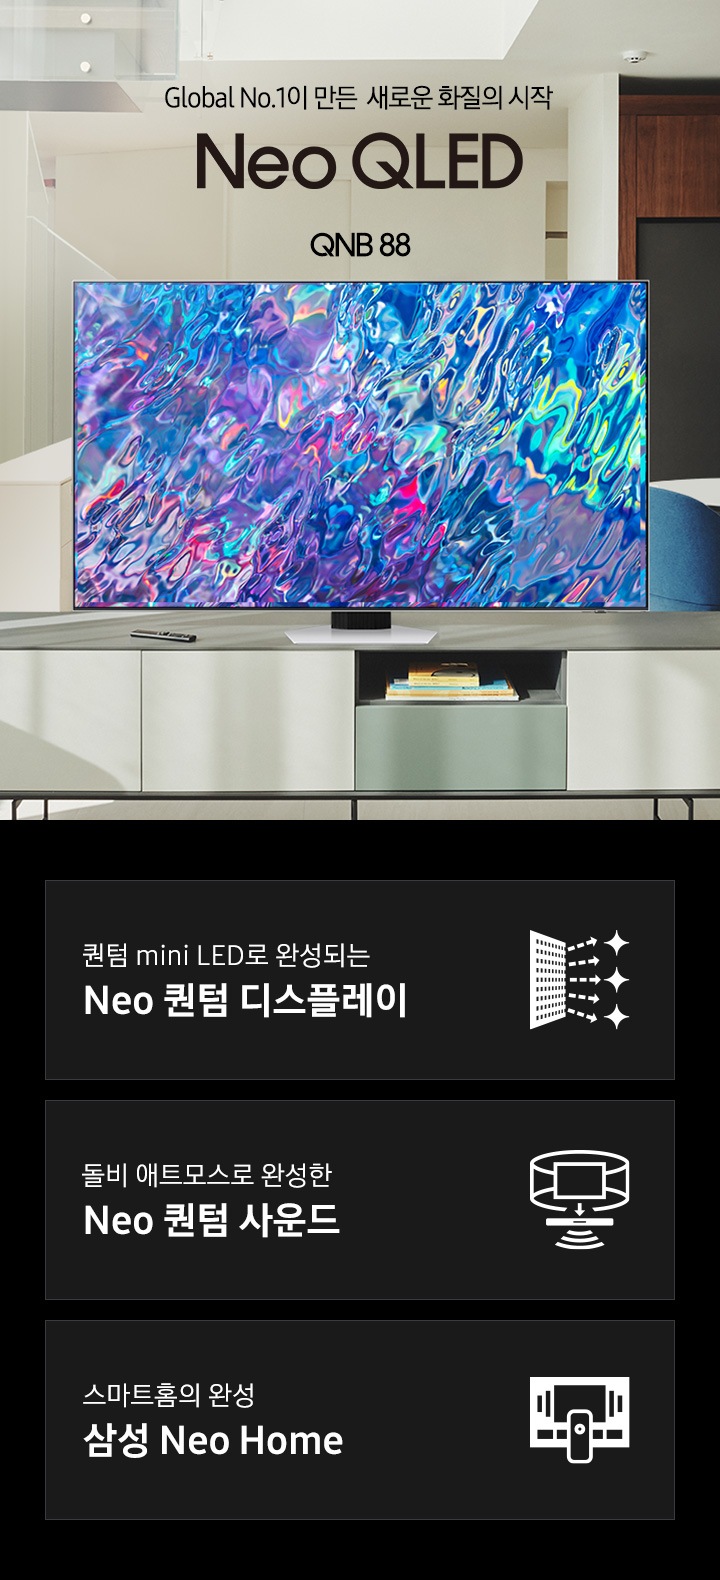 거실 서랍장 위에 TV 가 놓여있습니다. TV 화면에는 푸른색 파도 화면이 보입니다. Global No.1이 만든 새로운 화질의 시작 Neo QLED QNB88 KV입니다. 하단 3POD에는 퀀텀 mini LED로 완성되는 Neo 퀀텀 디스플레이 문구와 반짝이는 디스플레이 아이콘, 돌비 애트모스로 완성한 Neo 퀀텀 사운드 문구와 TV 아이콘에서 사운드 음파를 표현한 아이콘, 스마트홈의 완성 삼성 Neo Home 문구와 TV와 리모컨, TV 속 컨텐츠들을 표현한 아이콘이 있습니다.